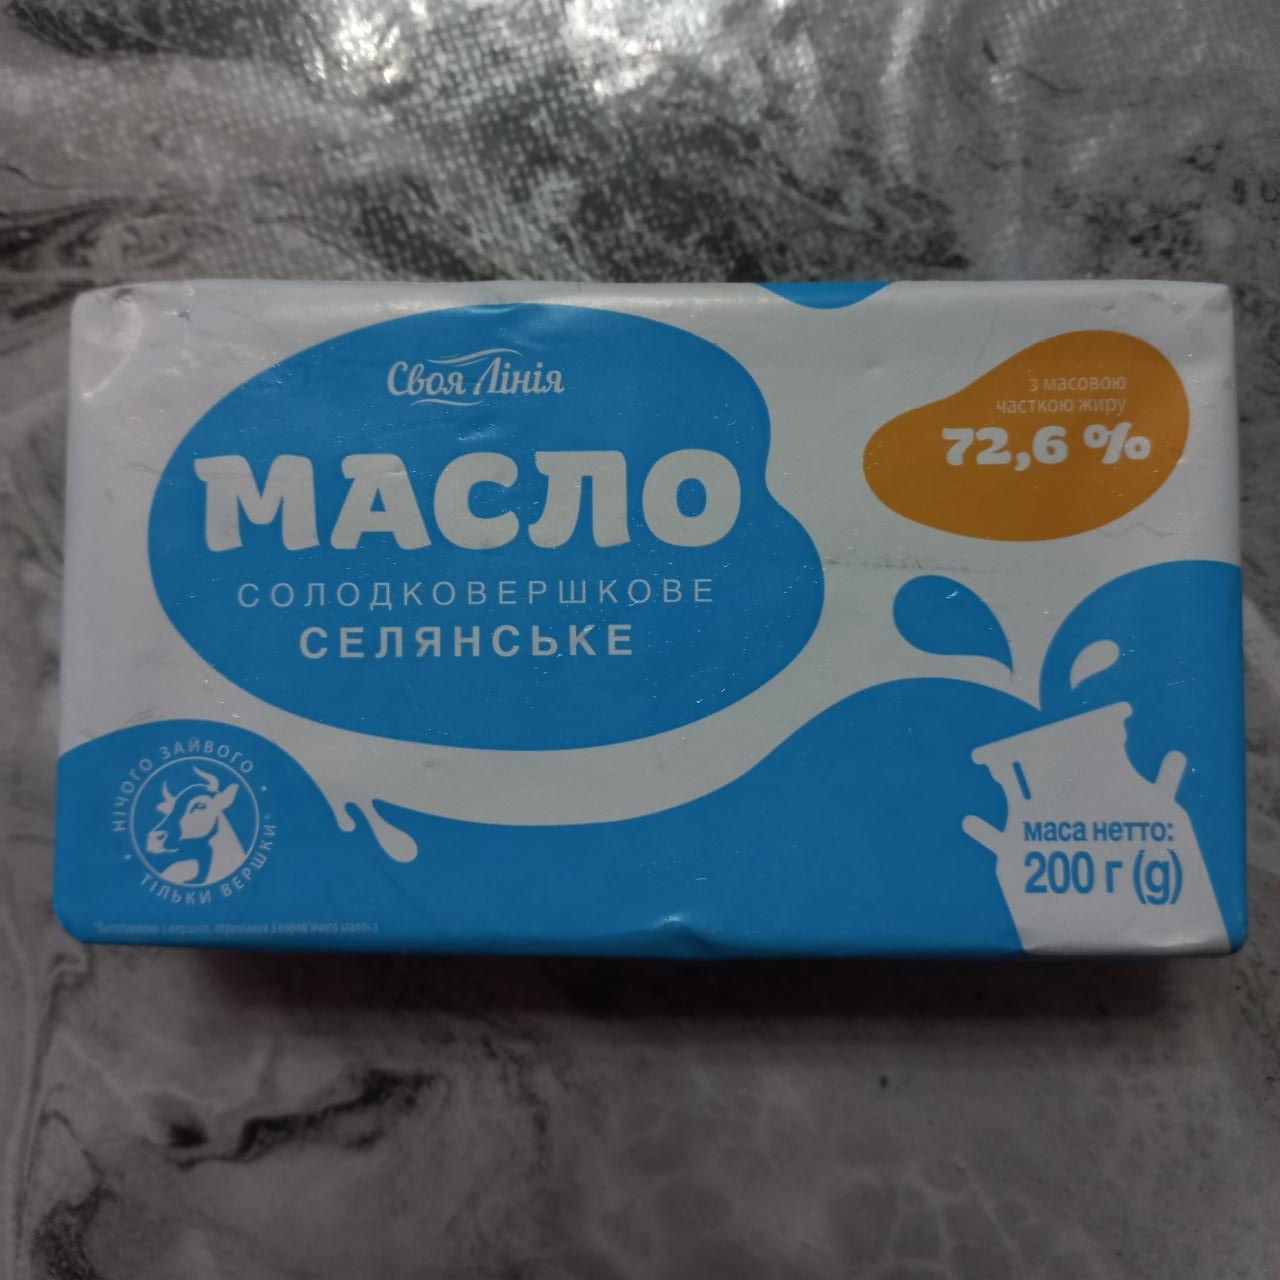 Фото - Масло сладкосливочное Селянське 72.6% Своя Линия